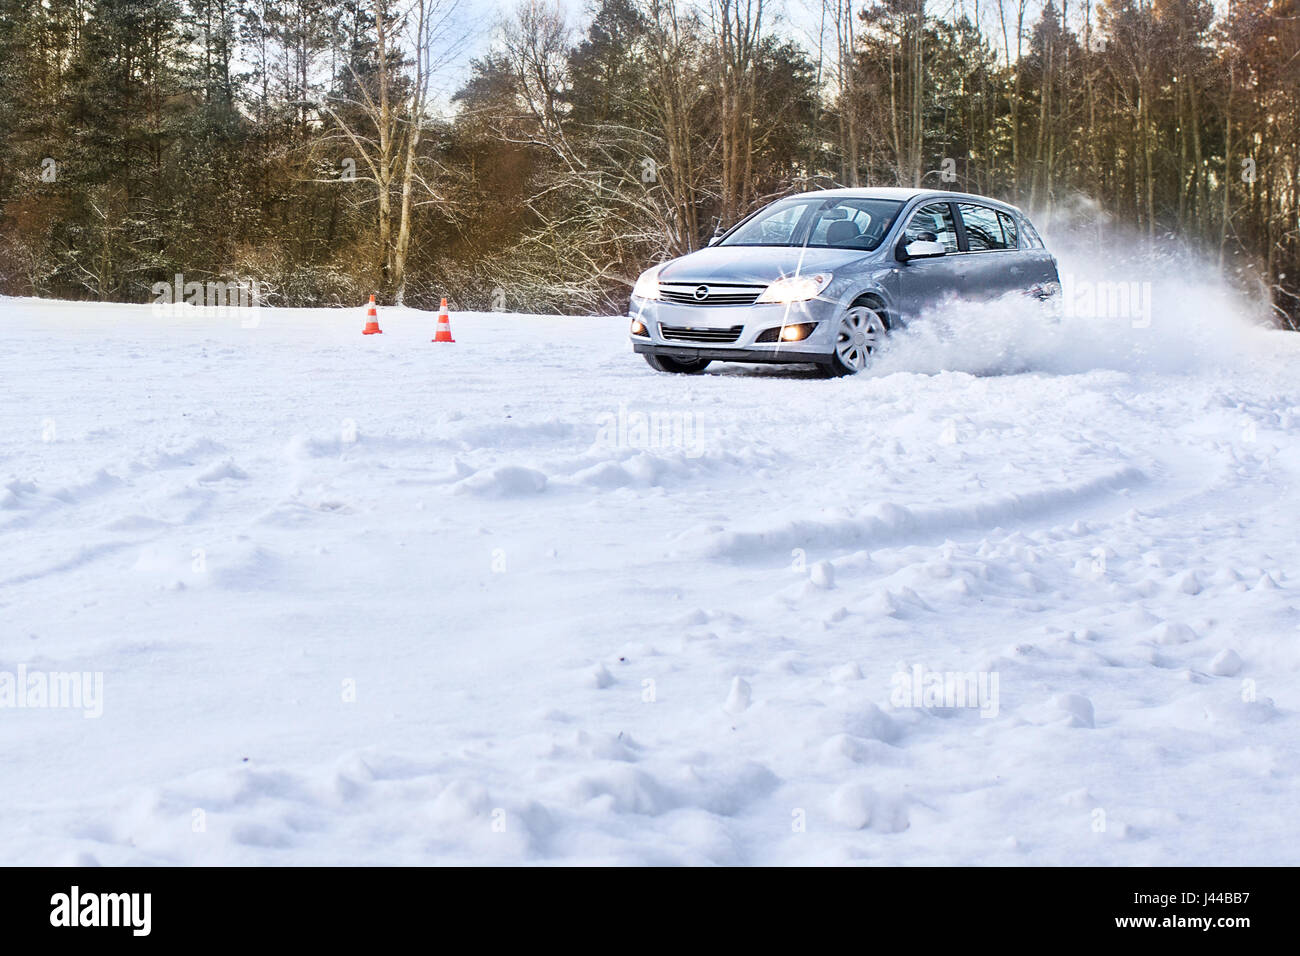 Extreme lezioni di guida, insegnamento - imparare a guidare sulla neve, ghiaccio su strada bagnata ed un parcheggio per la patente di guida e migliori competenze Foto Stock